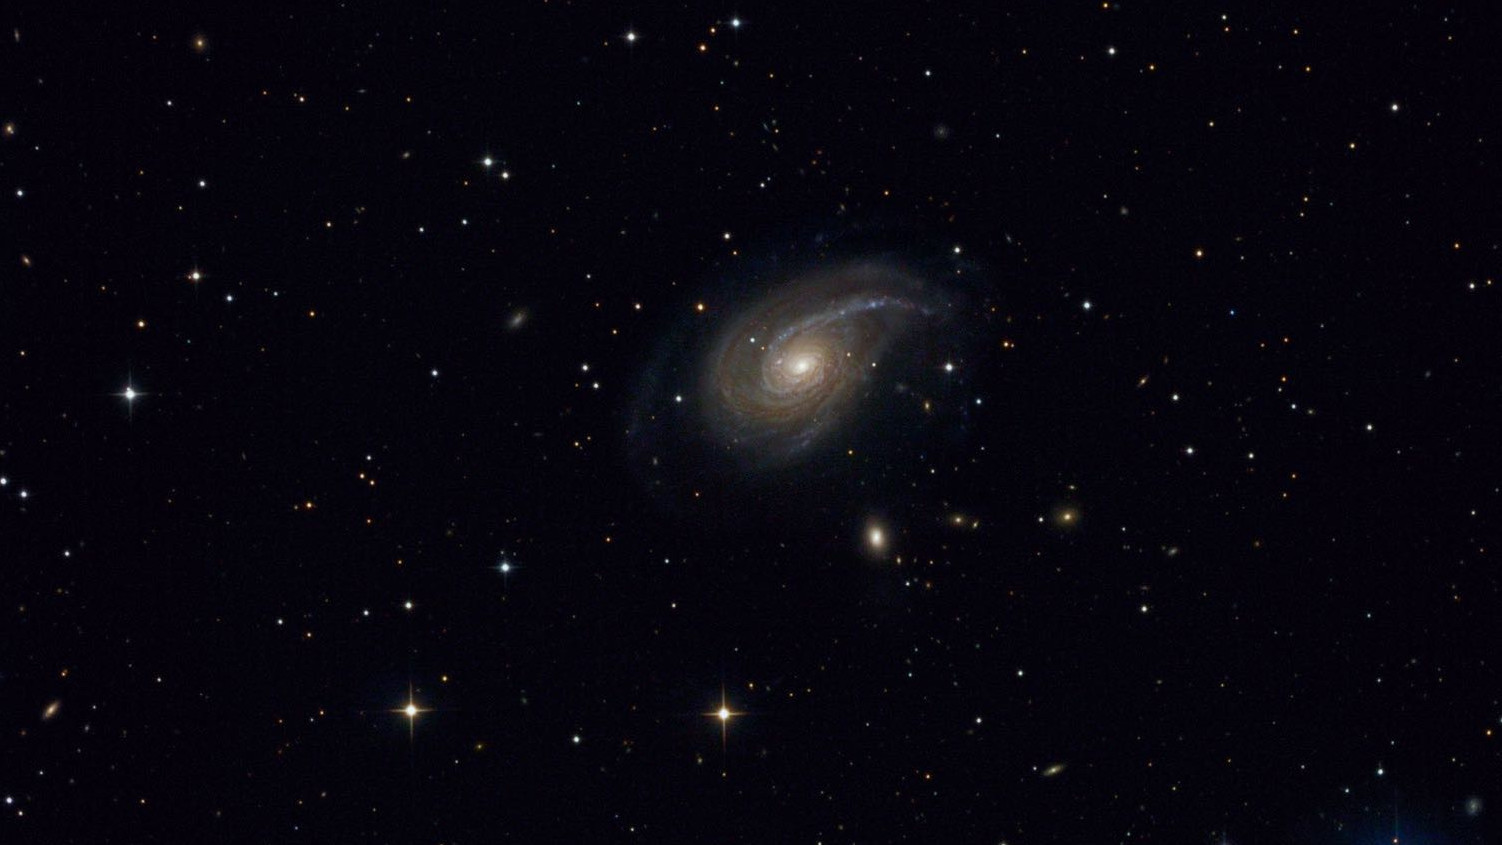 Le galassie NGC 772 e NGC 770 nella costellazione dell'Ariete. Michael Breite,
Stefan Heutz e Wolfgang Ries